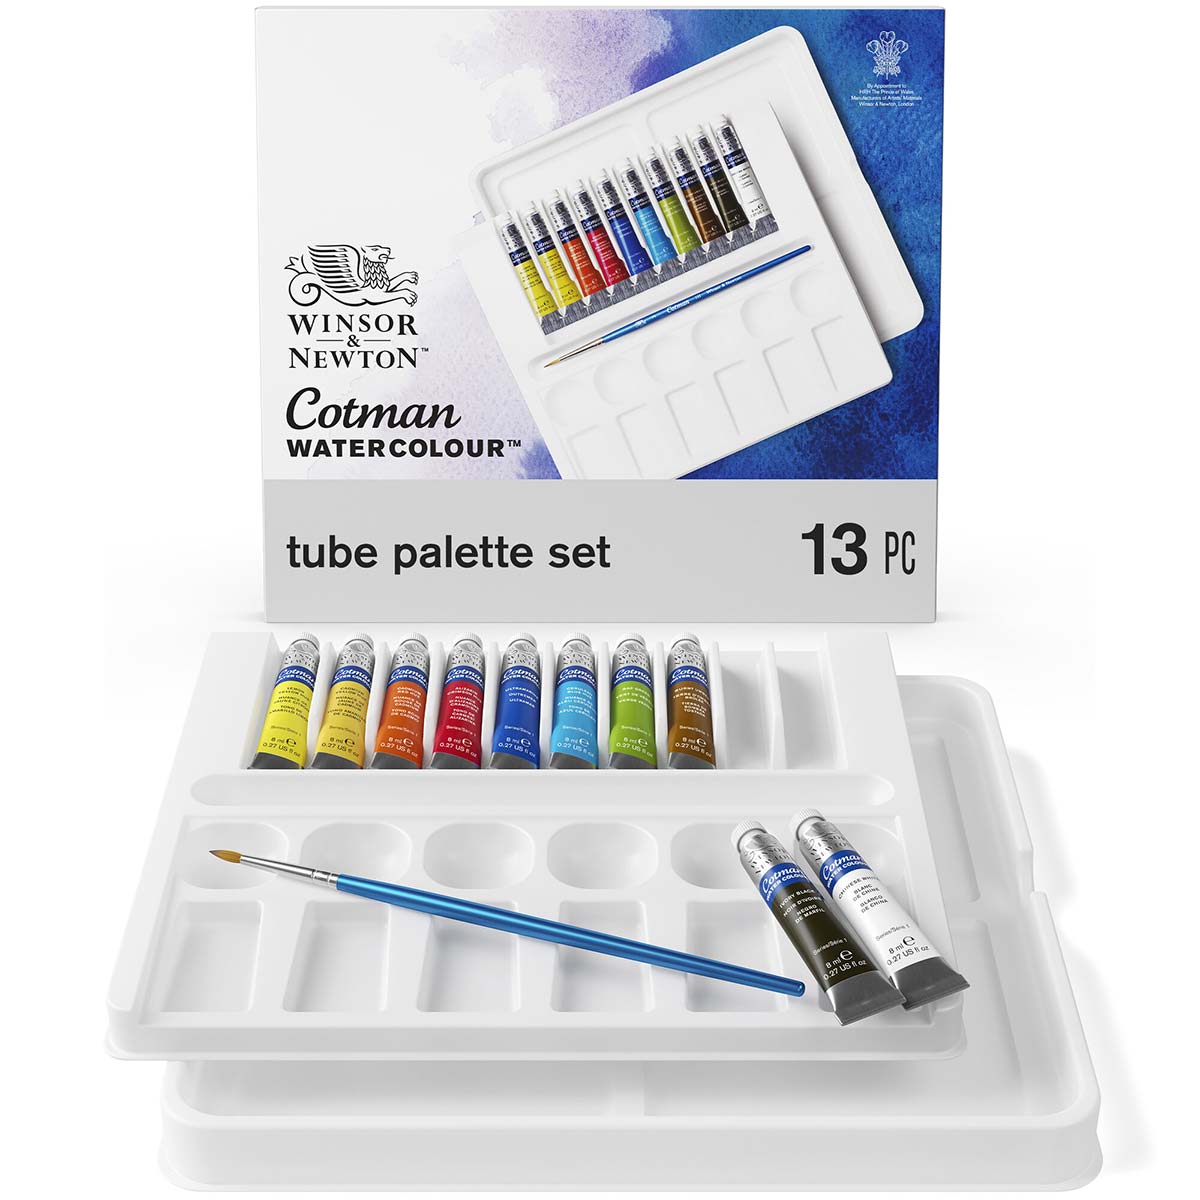 Winsor e Newton - Cotman Watercolor - Palette Set